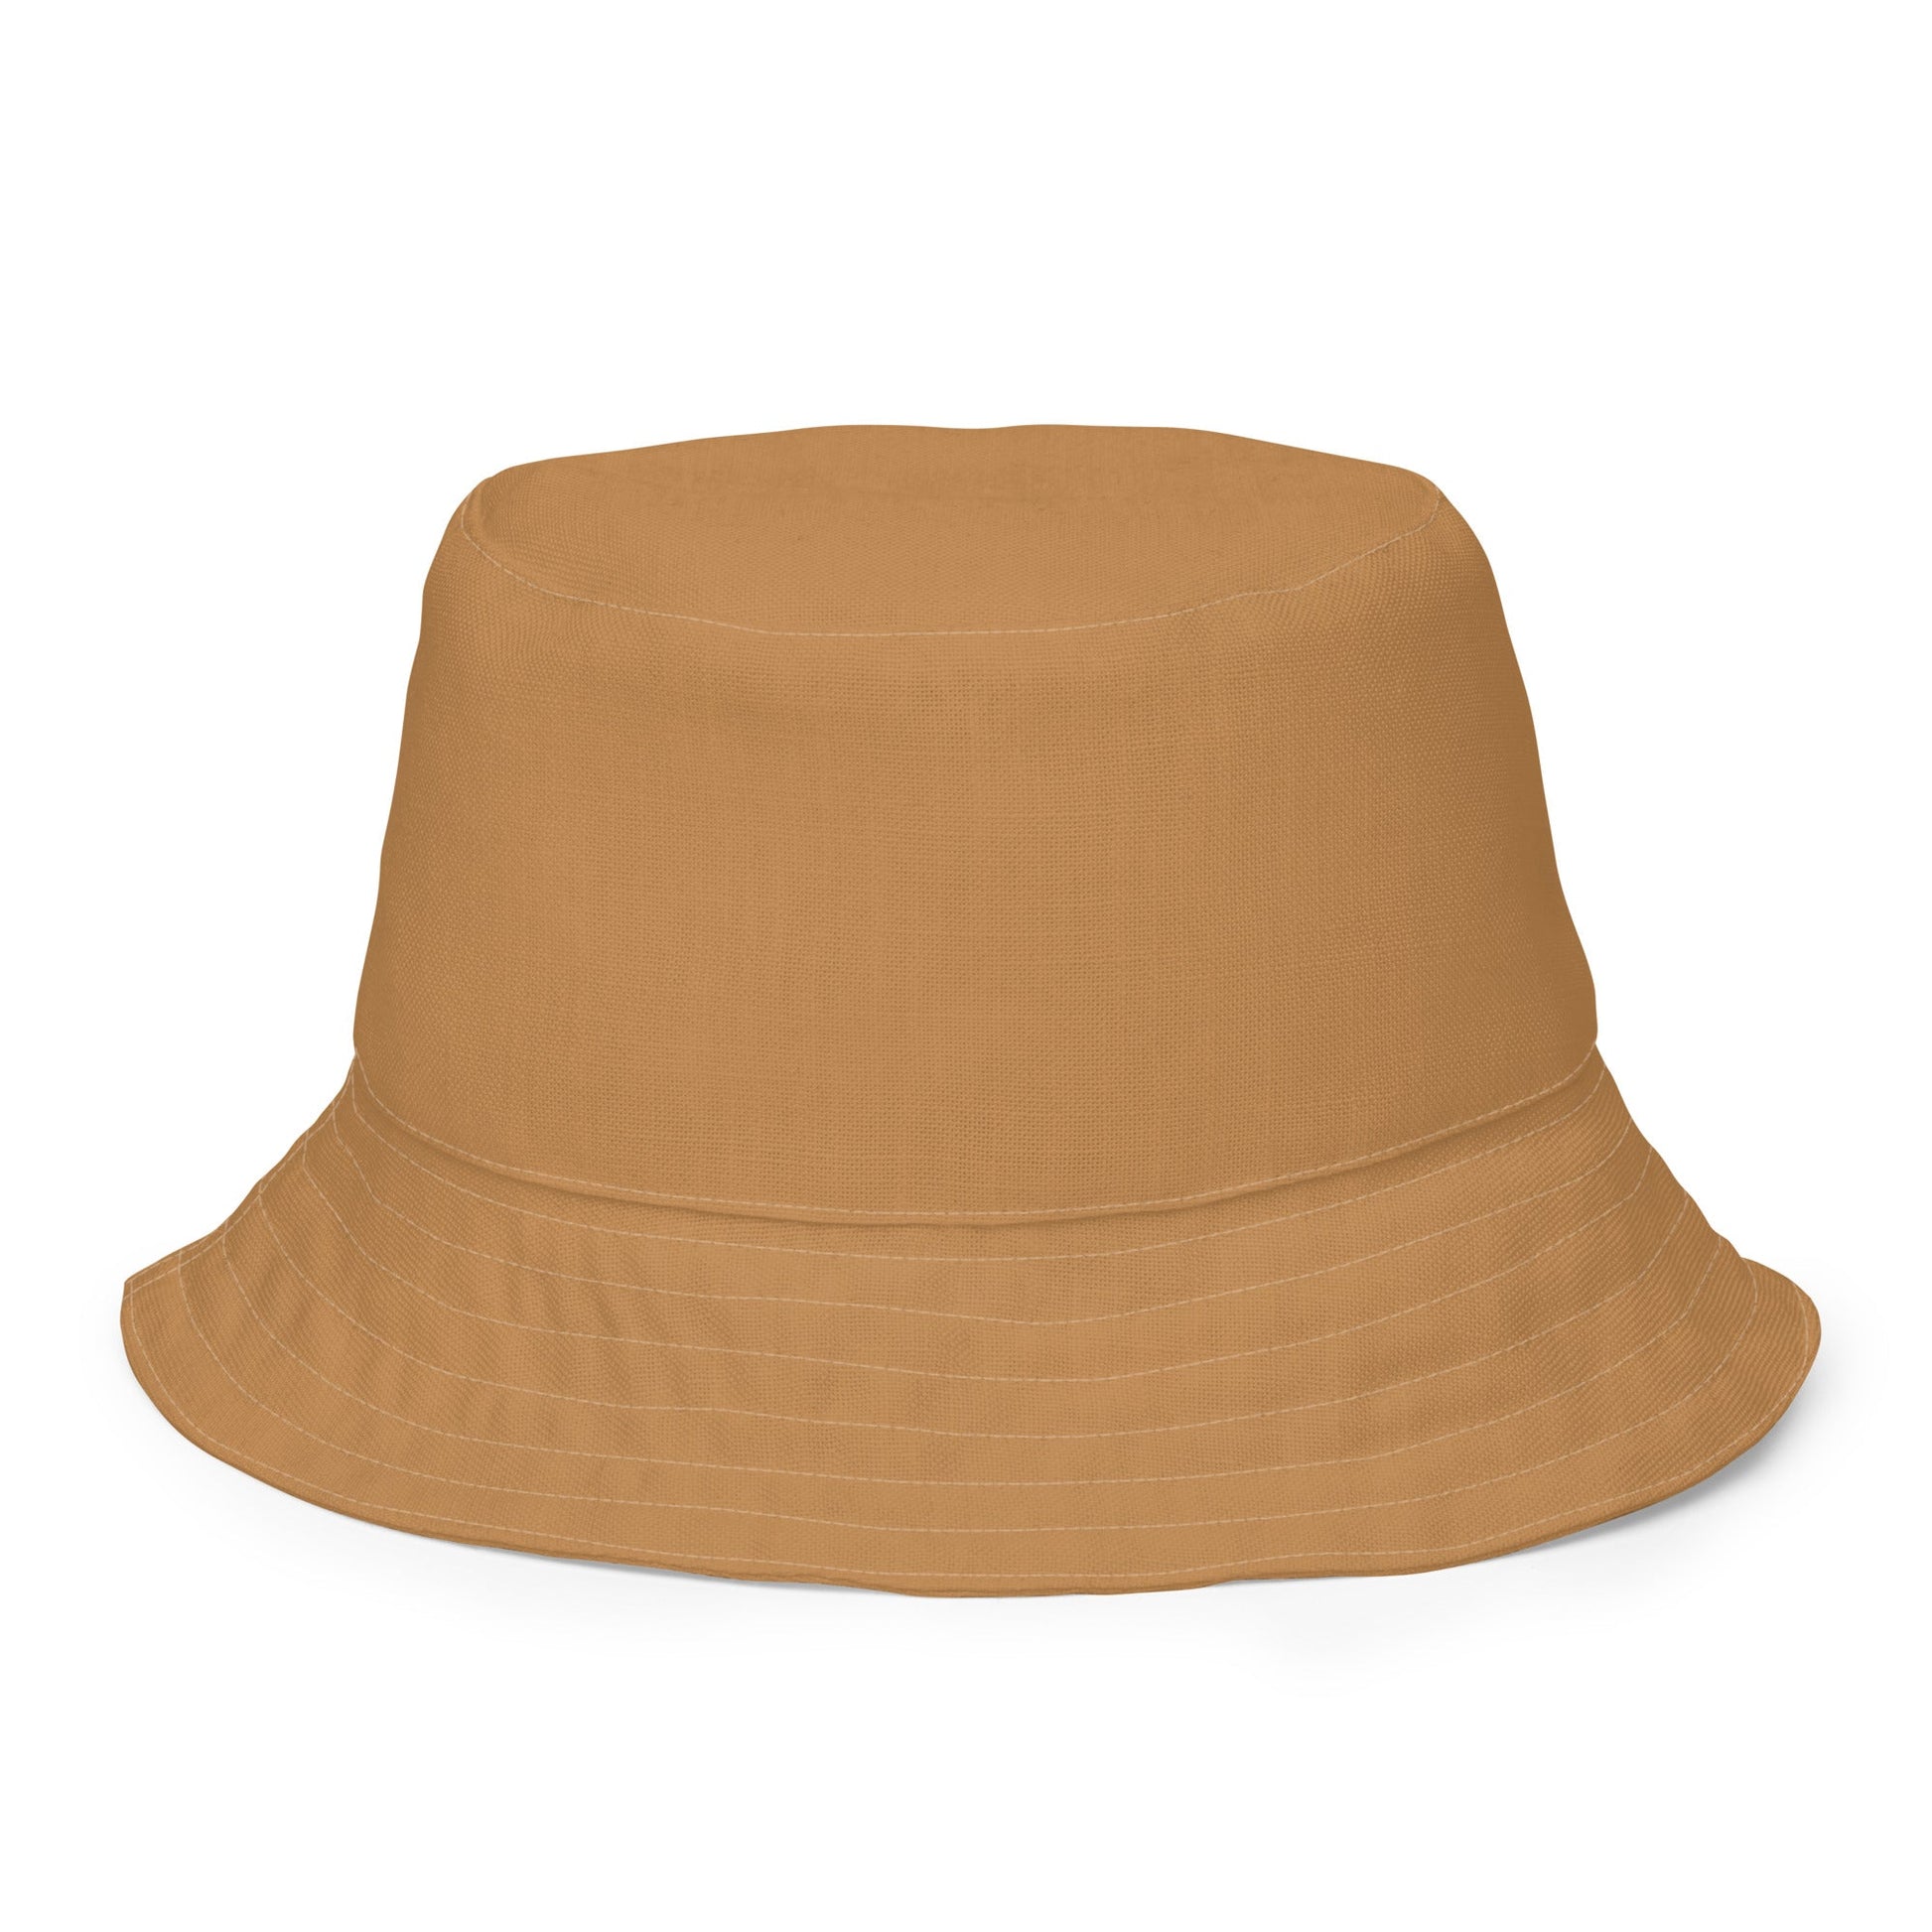 Mountain Camping Reversible bucket hat - Appalachian Bittersweet - bucket hat